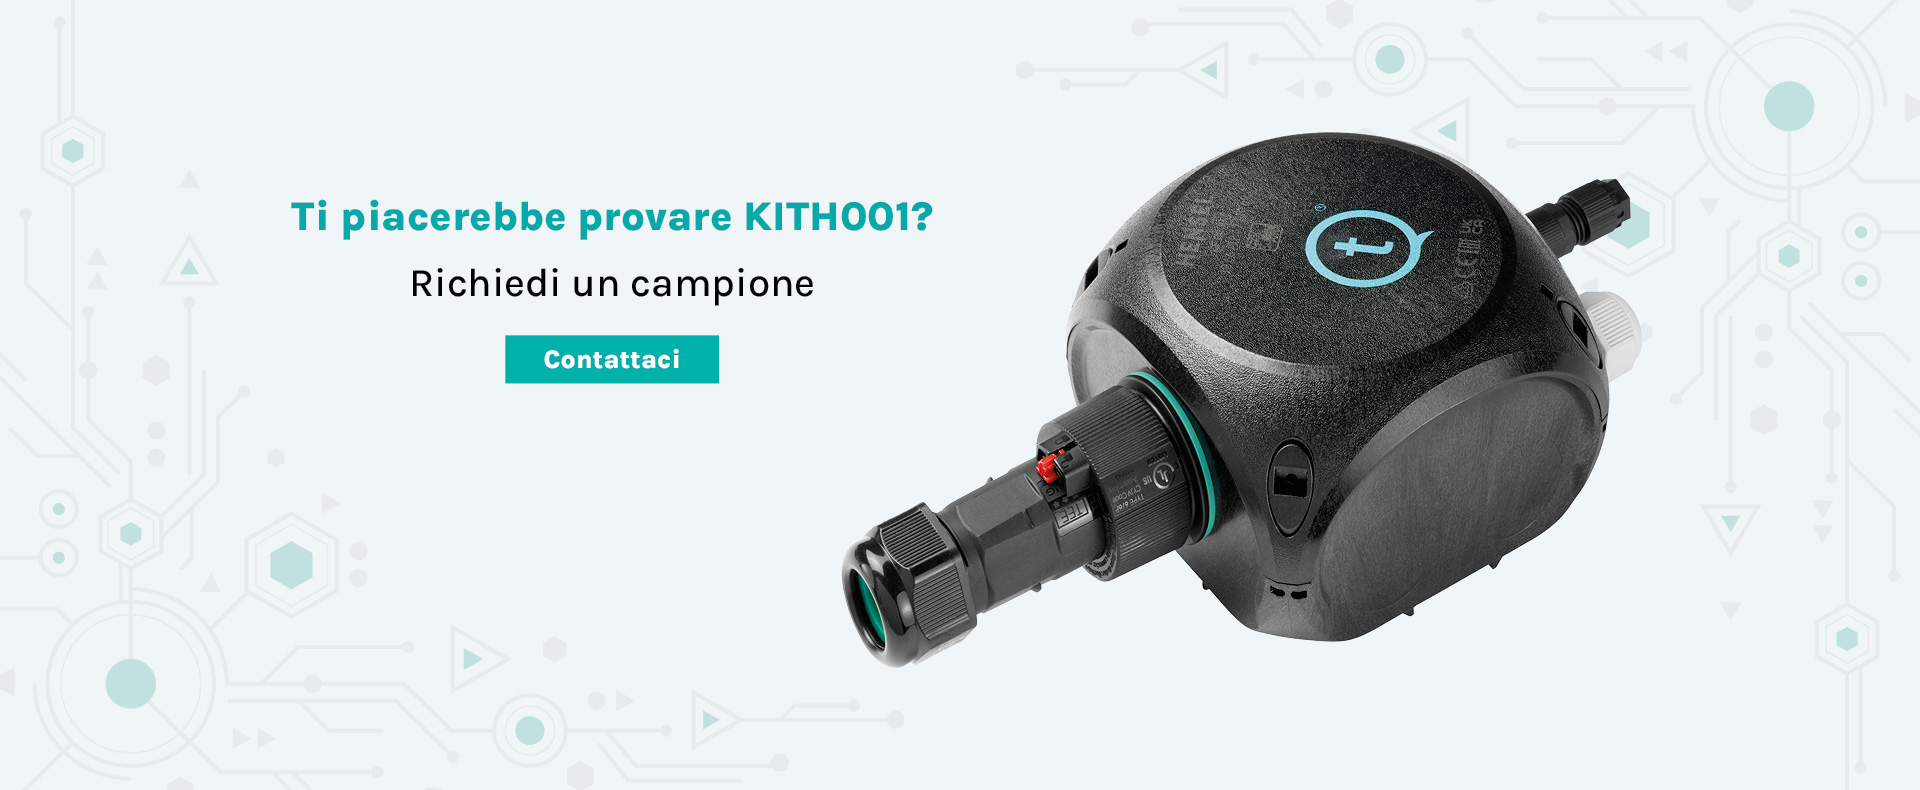 techno-kith001